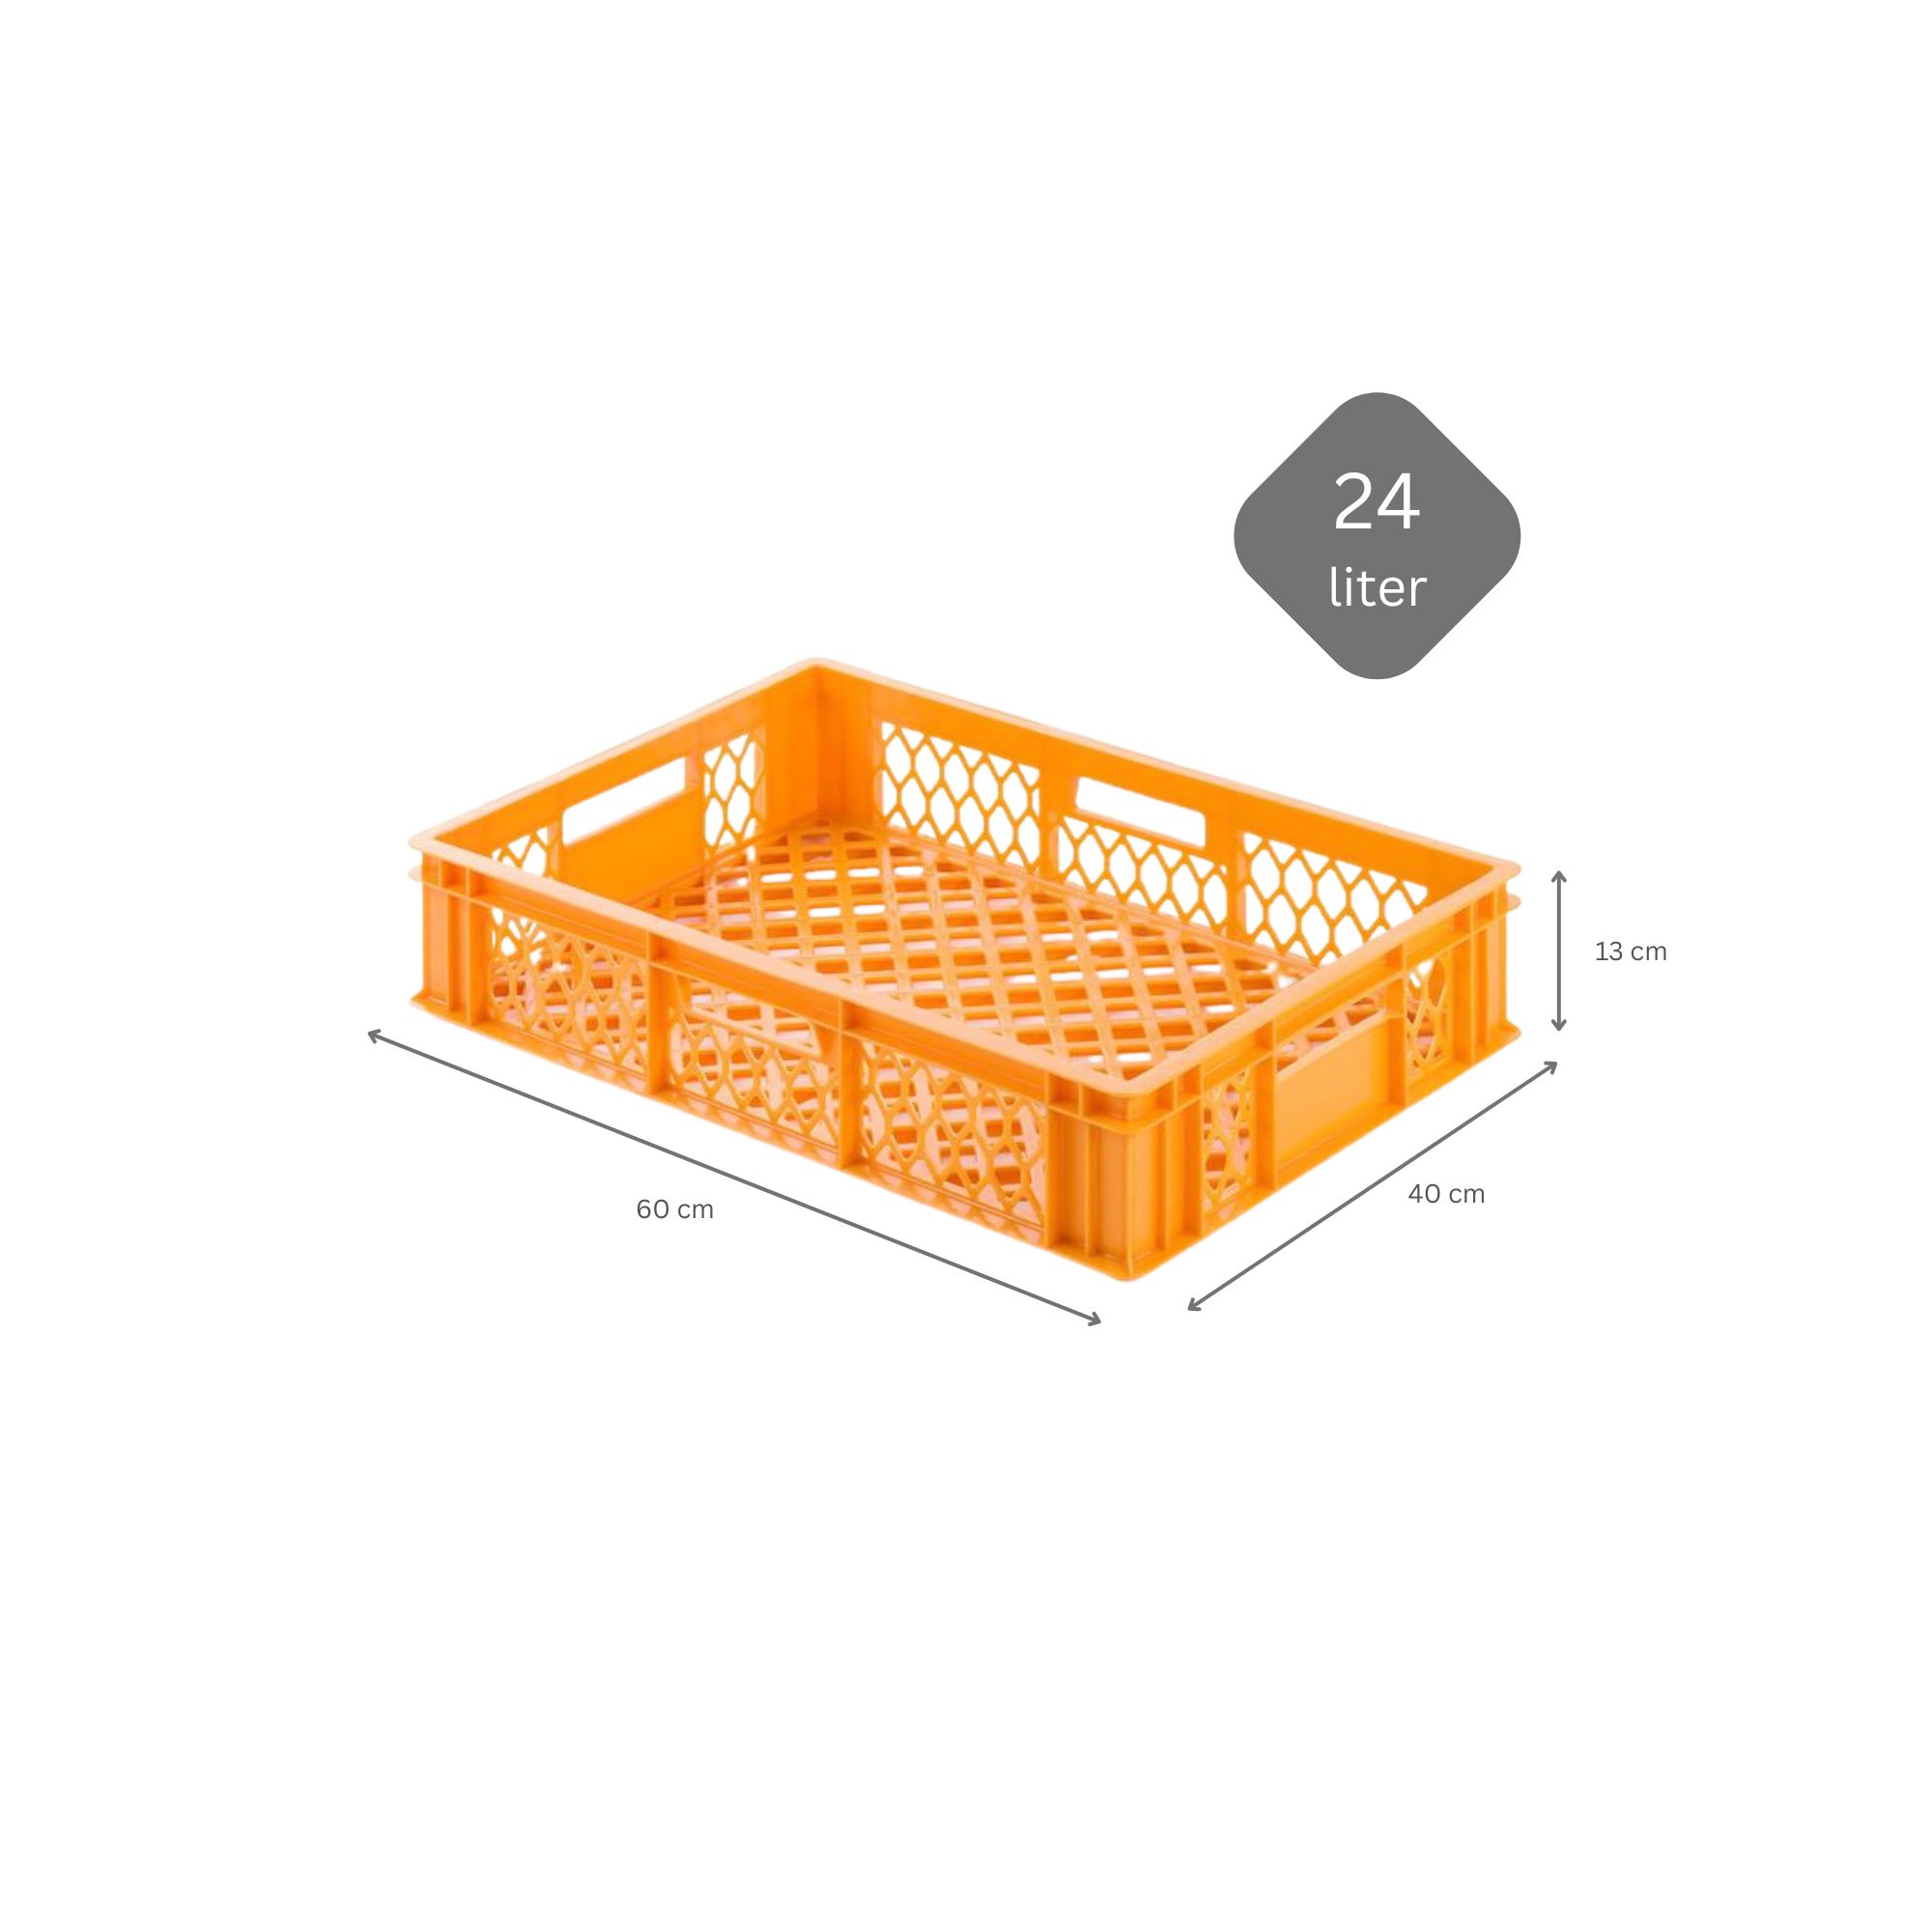 Eurobehälter Bäcker- & Konditorenkasten | HxBxT 13x40x60 | 24 Liter | Gelb-Orange | Brötchenkiste, stapelbare Bäckerkiste